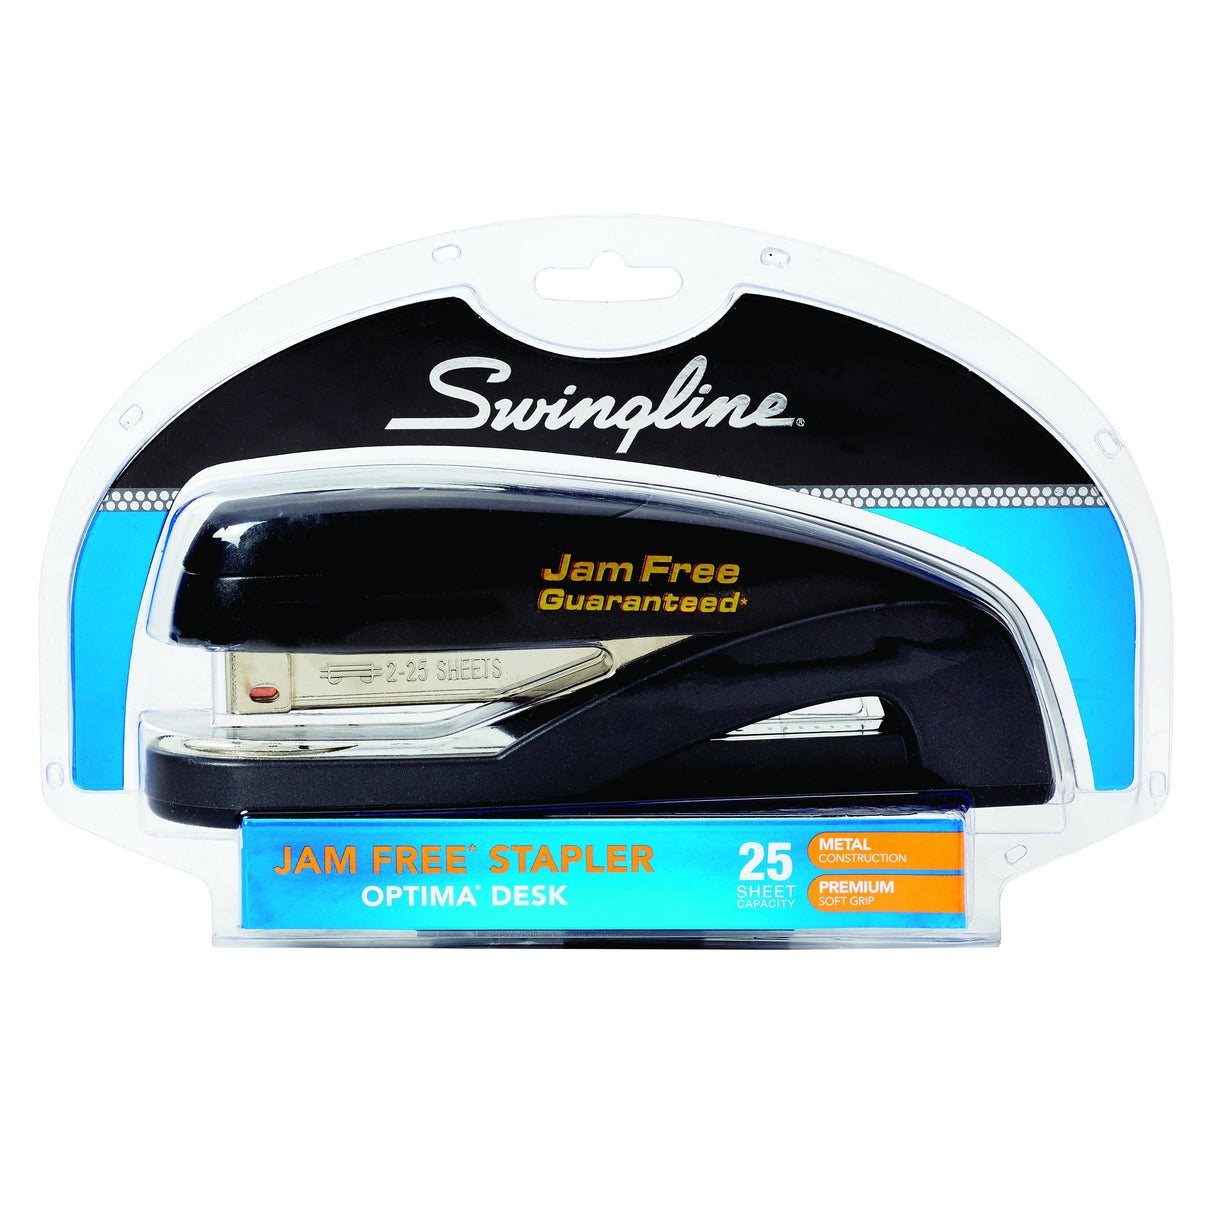 Swingline Optima Desk Stapler - 25 Sheet Capacity - Graphite Black